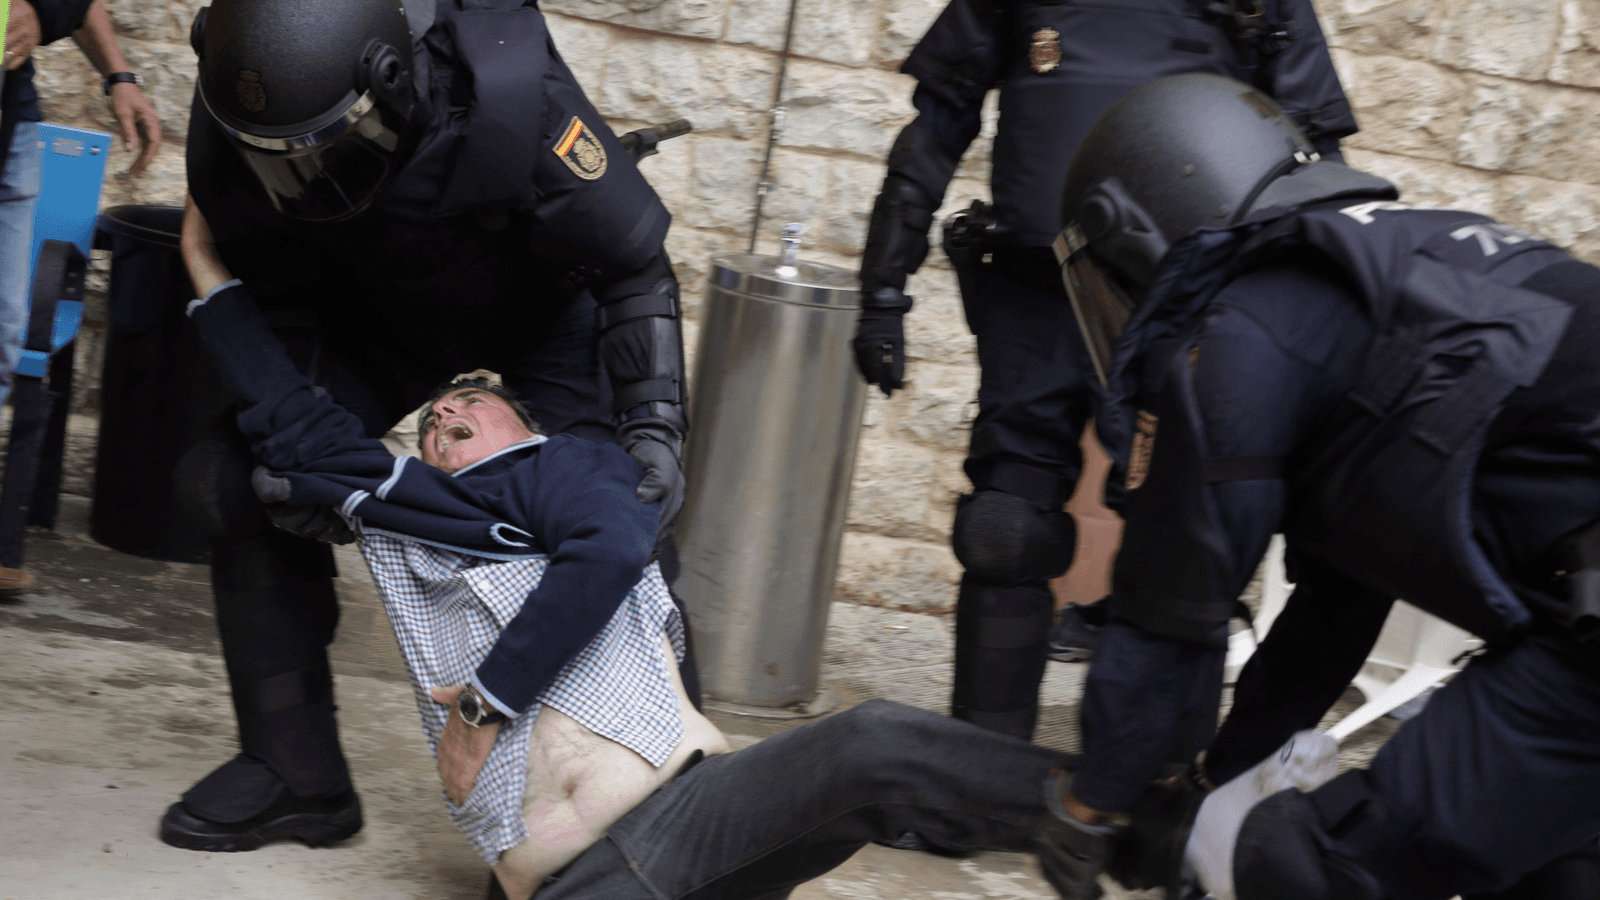 Spanish police drag man in Catalonia